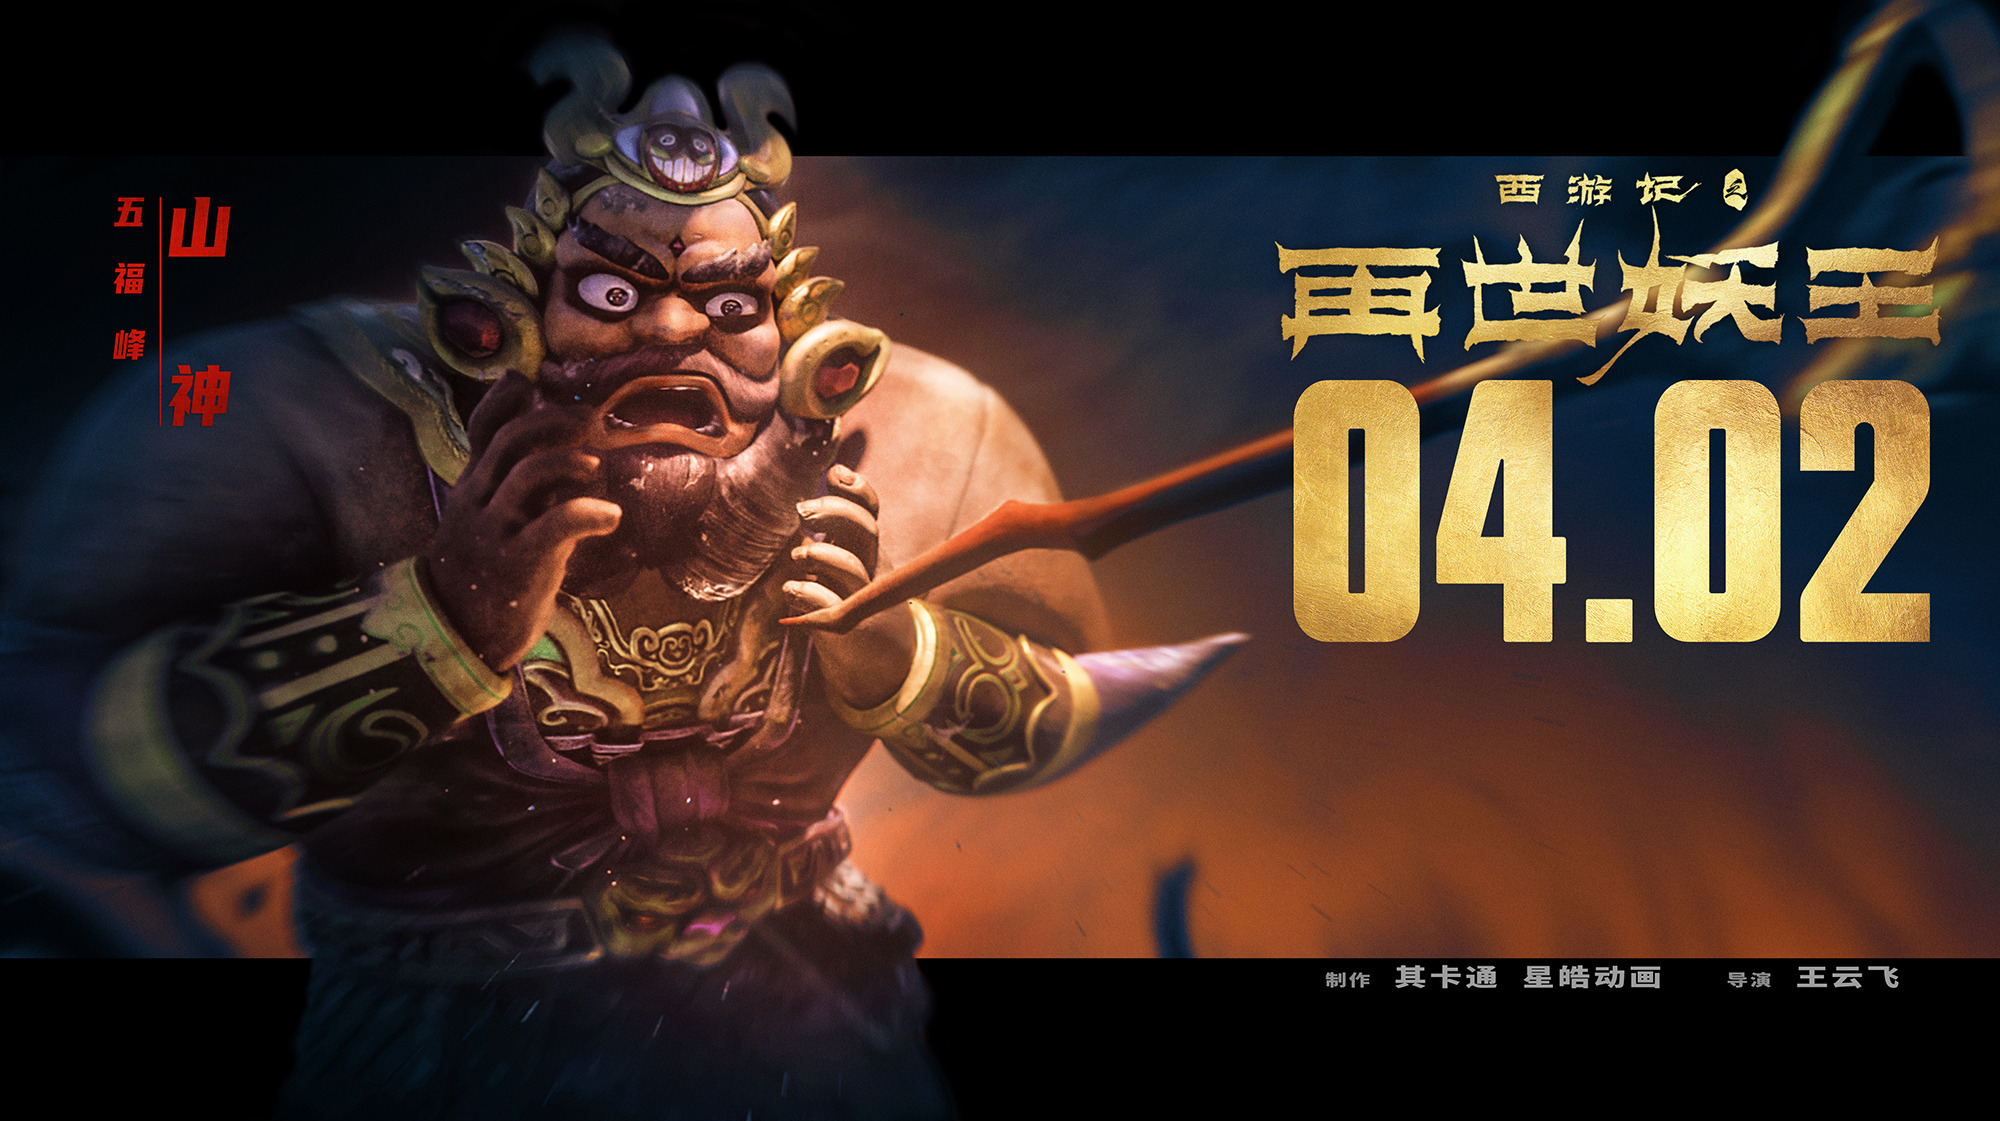 Mega Sized Movie Poster Image for Xi You Ji Zhi Zai Shi Yao Wang (#6 of 21)